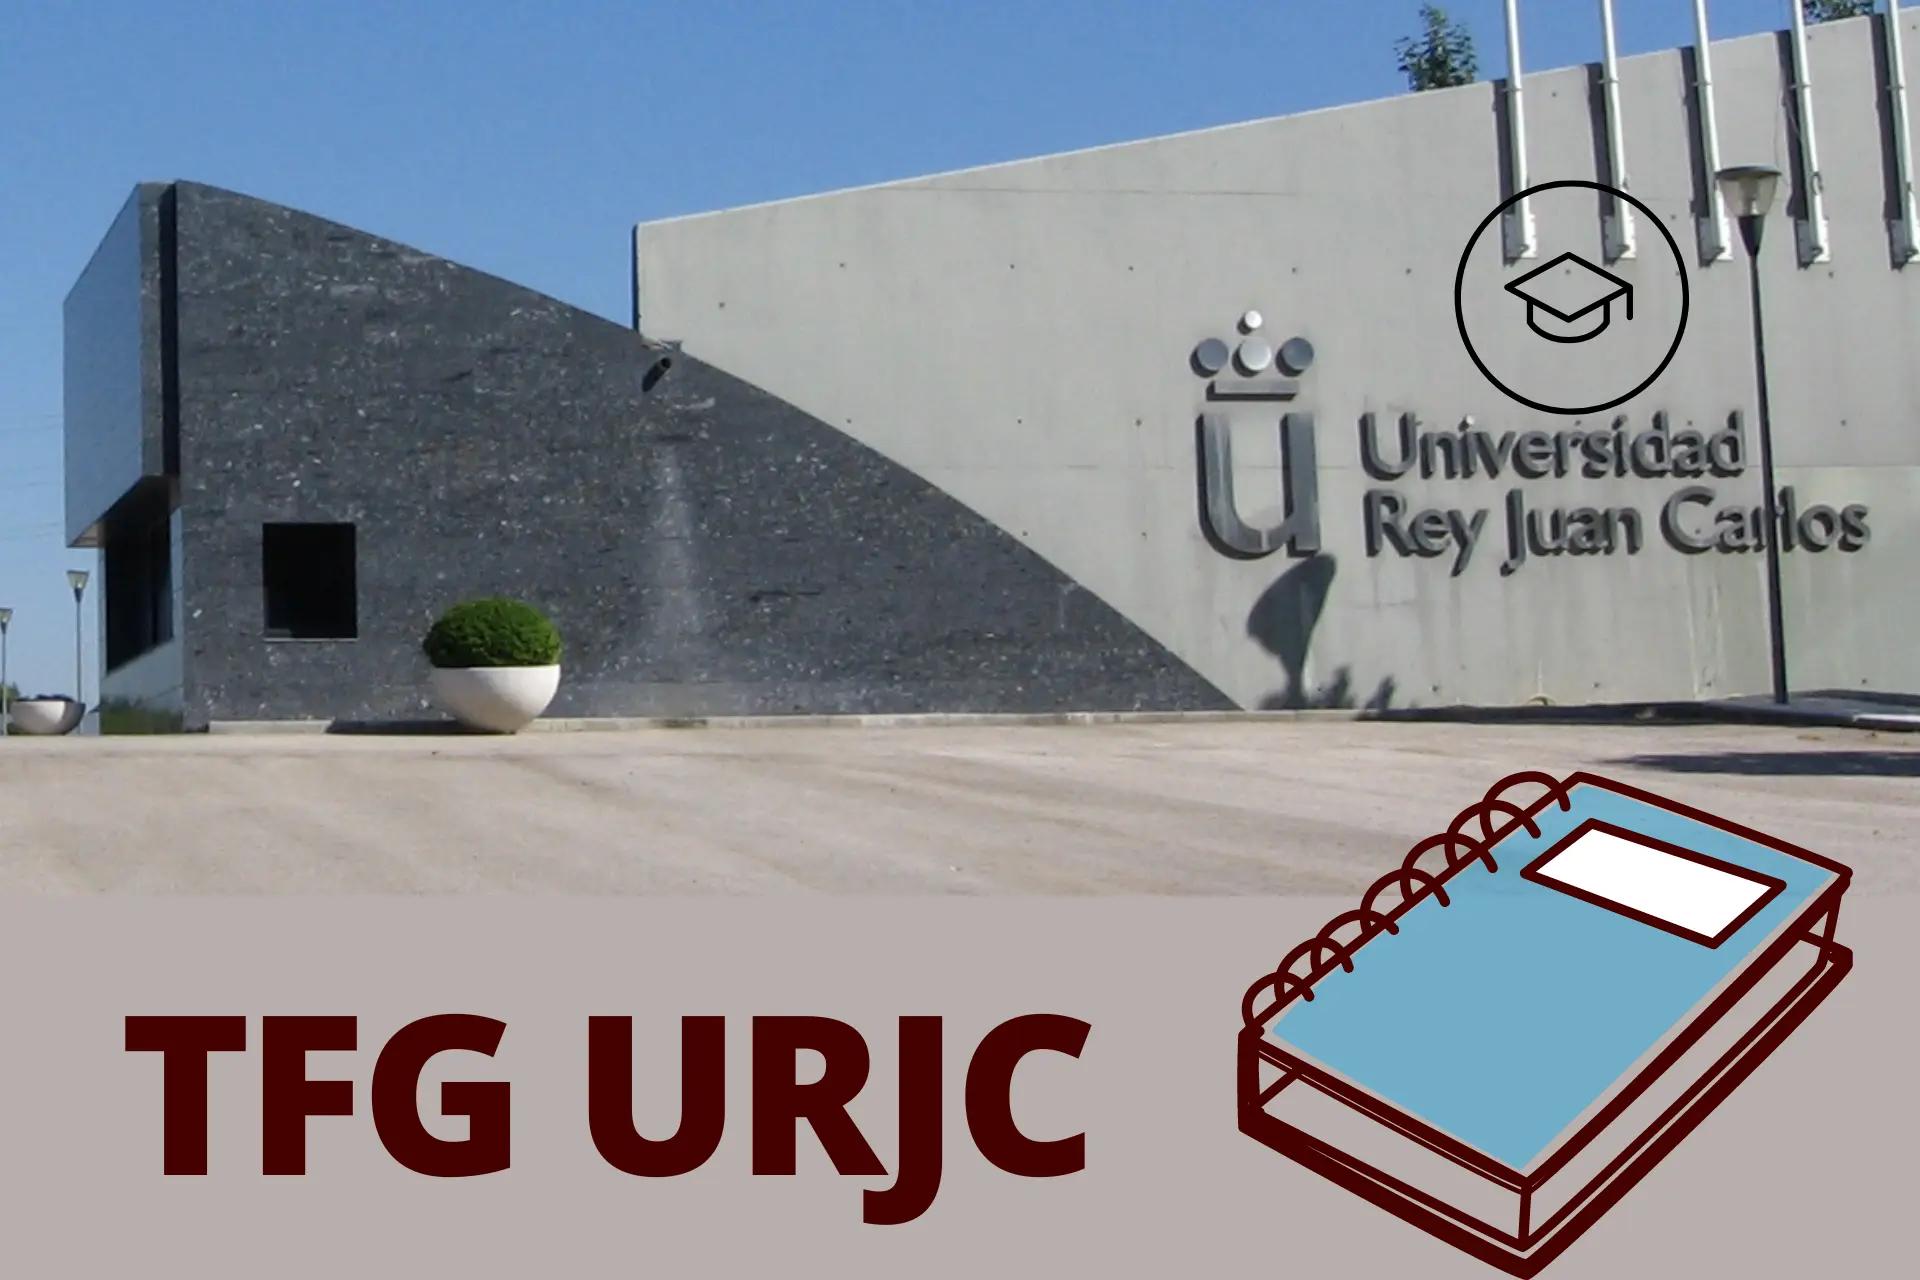 encuadernacion tfg urjc - Quién evalua el TFG URJC